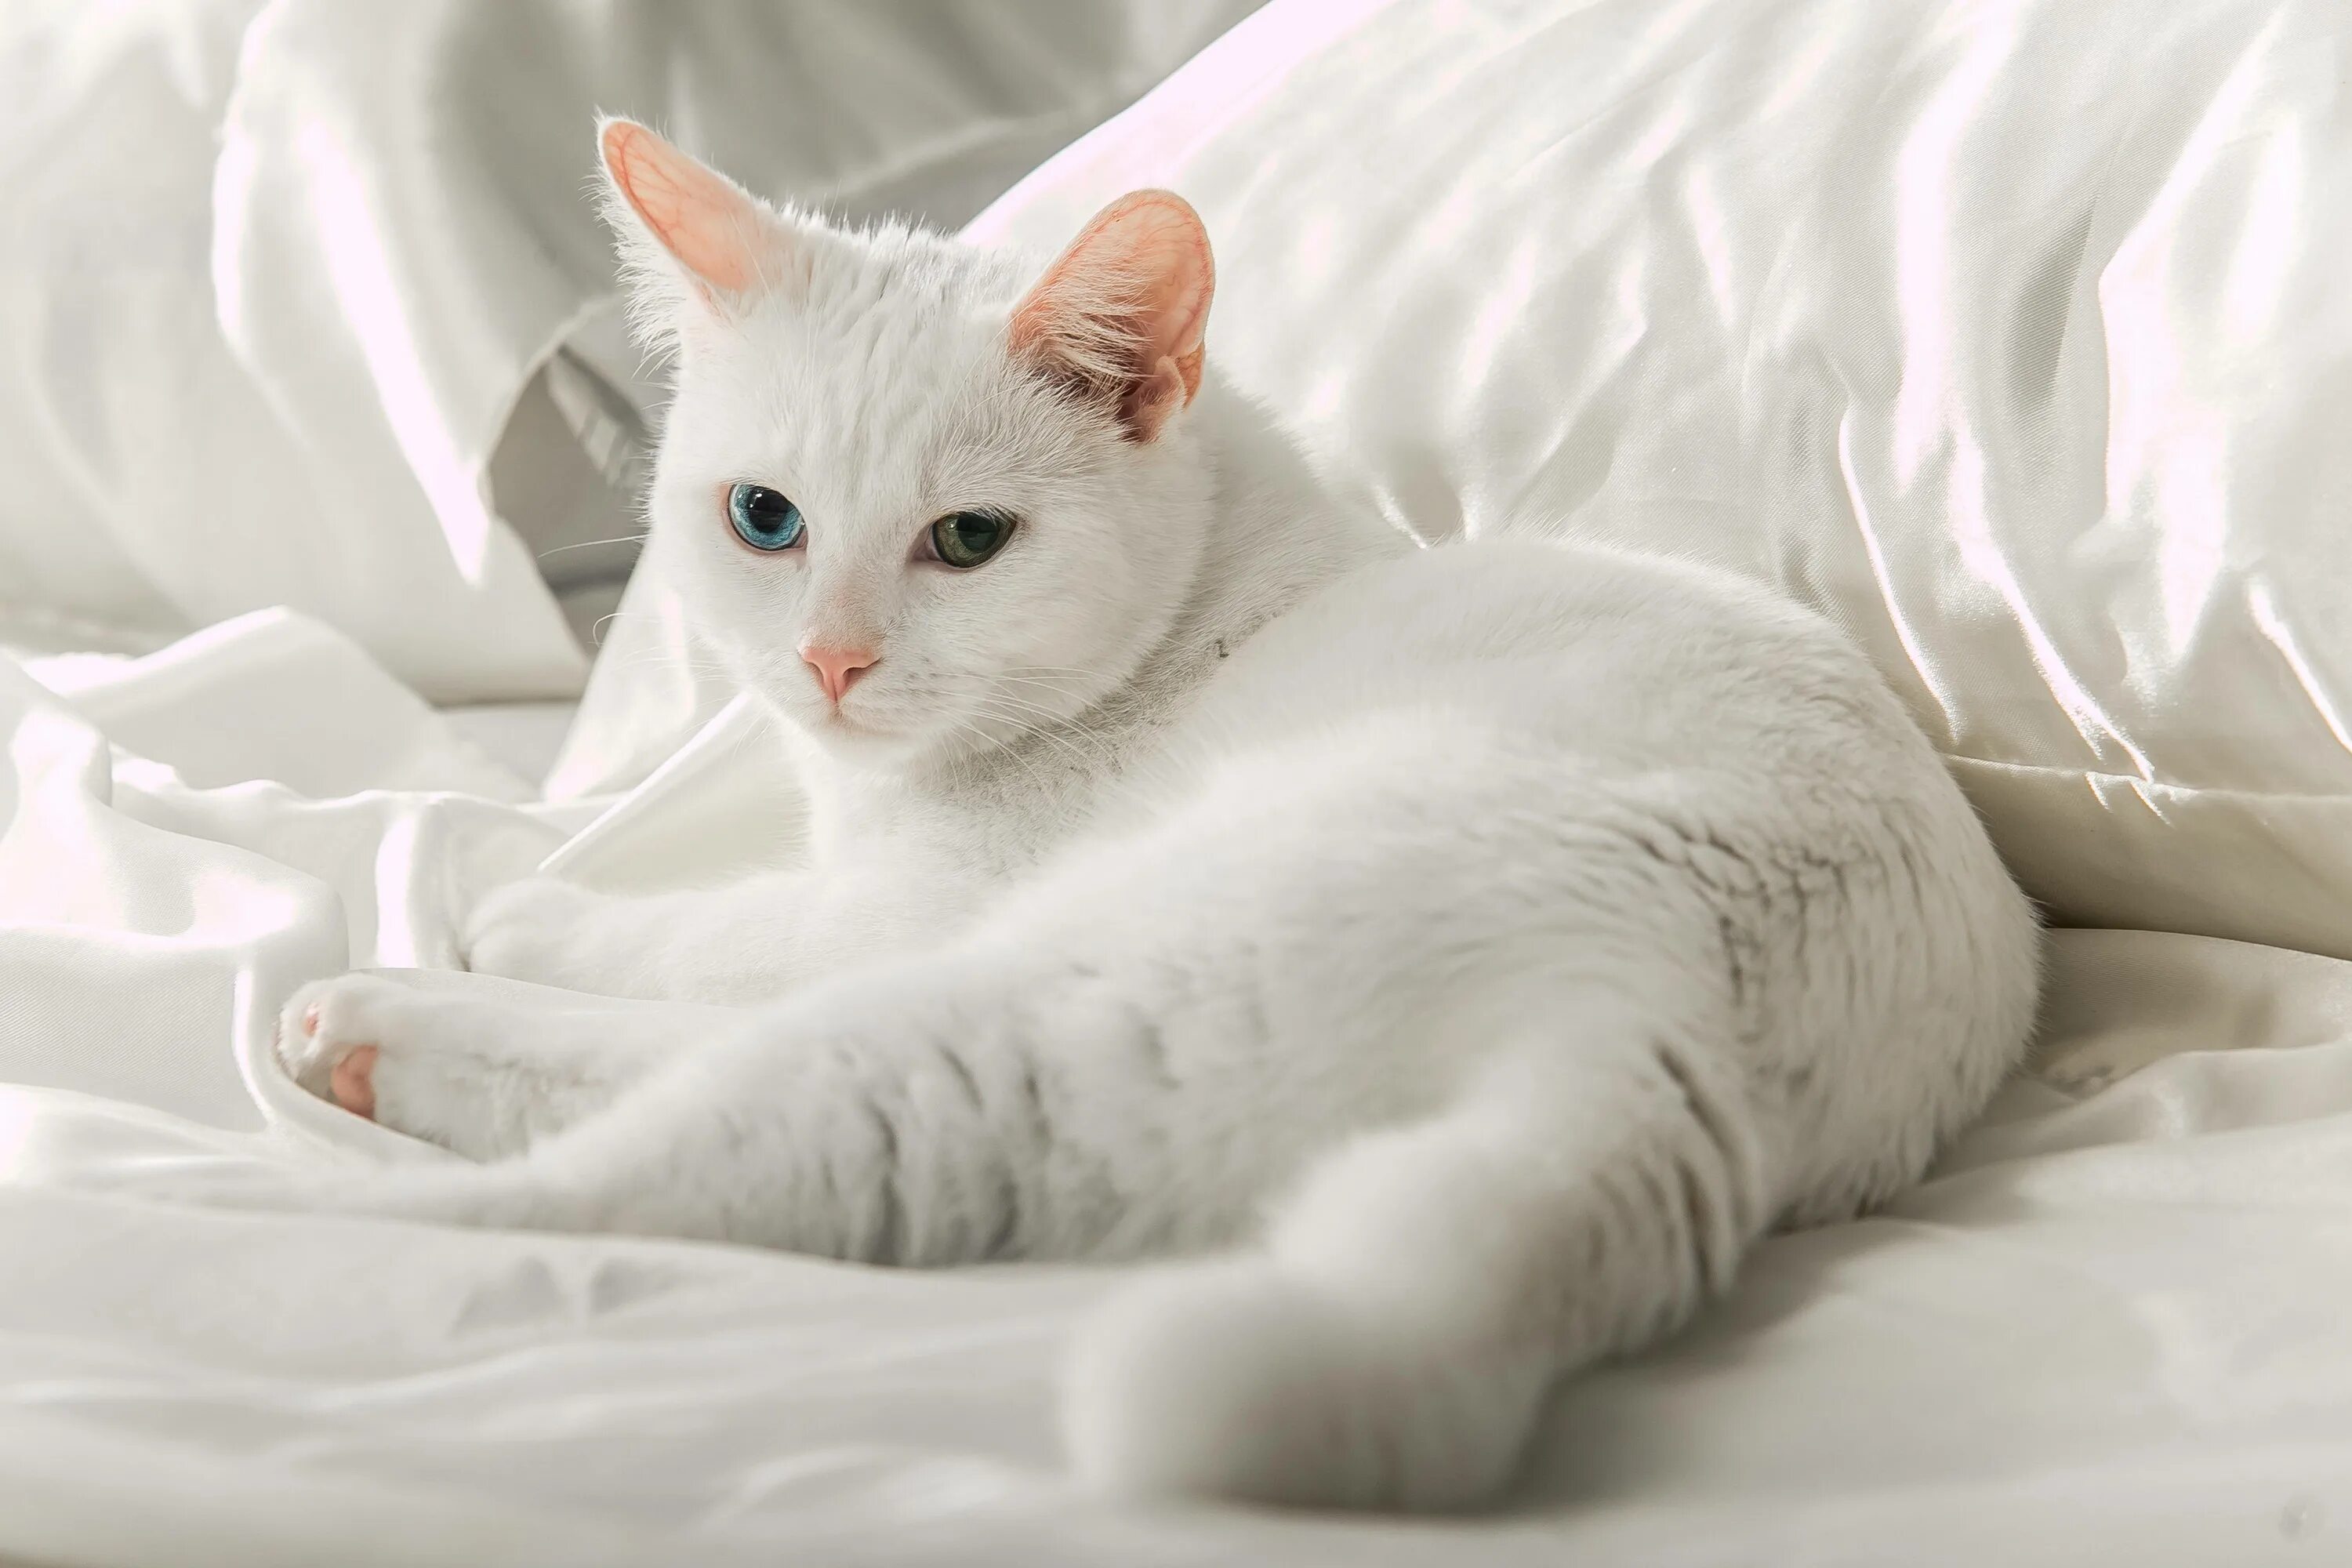 Белый кот мурзик. Турецкая ангора кошка. Турецкая ангора кошка короткошерстная. Турецкая ангора белая. Анатолийская короткошерстная кошка белая.